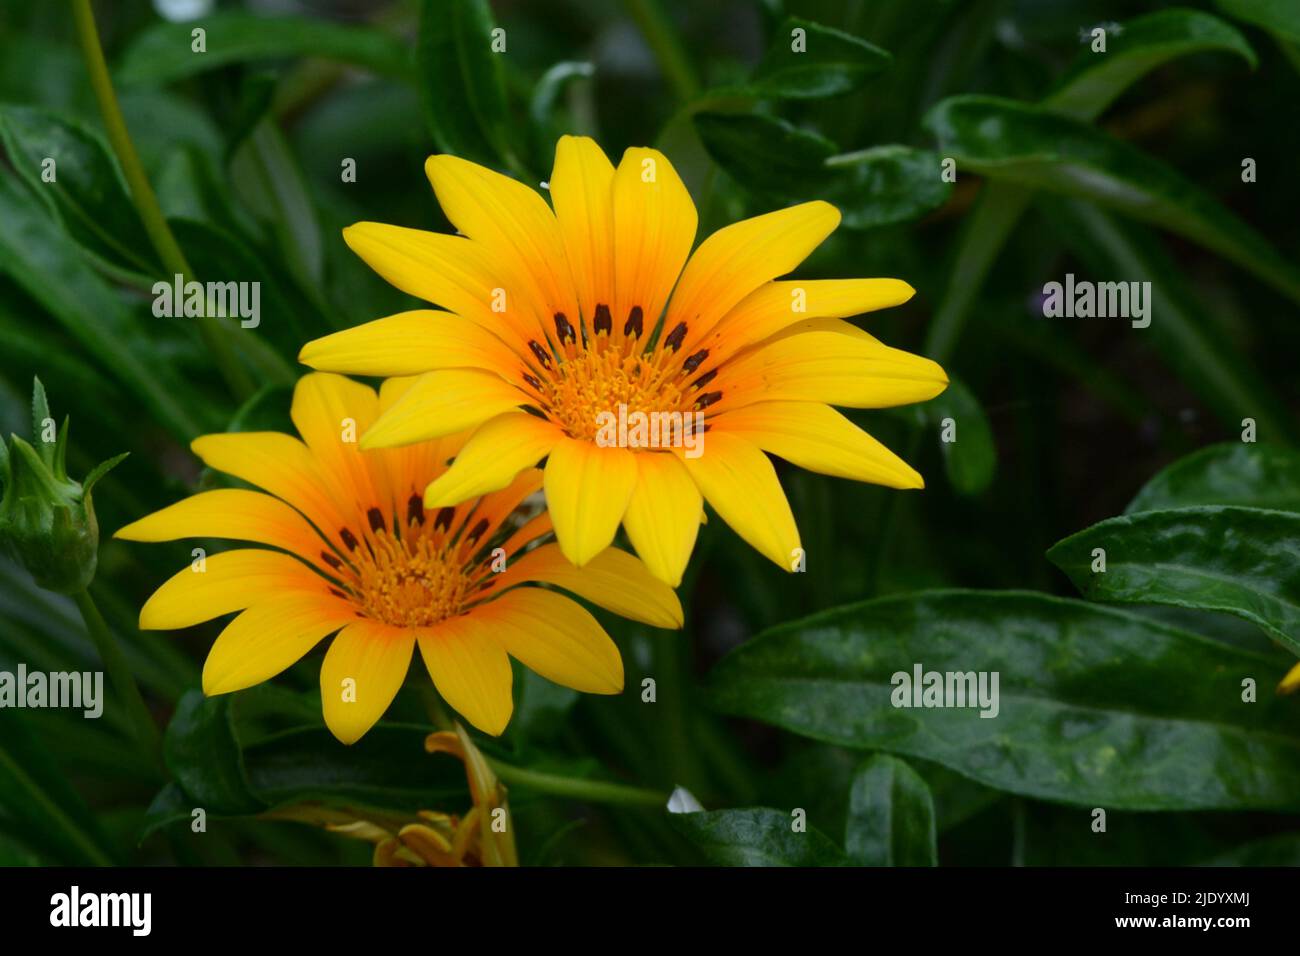 Gazania Daybreak Bright Orange Treasure flower orange-yellow daisy like flower Stock Photo